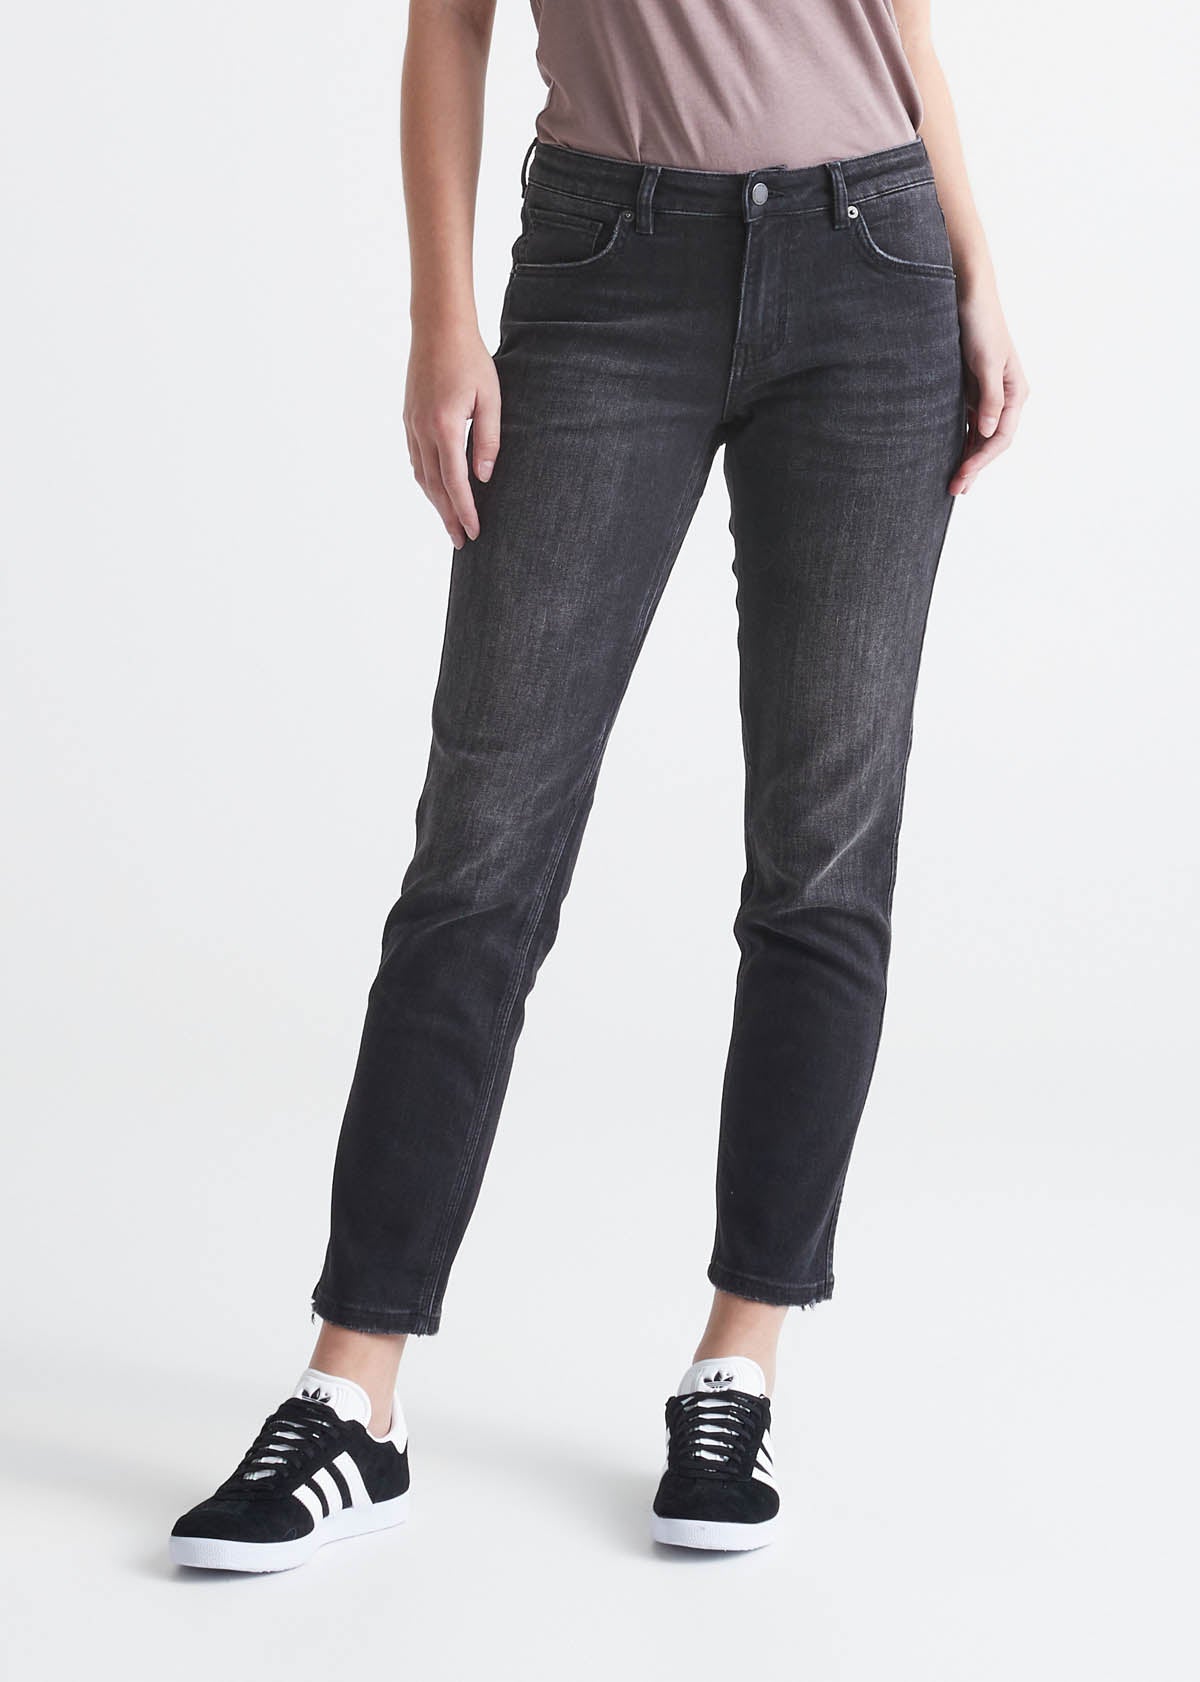 Shop Bootcut Pants, Women's Pants